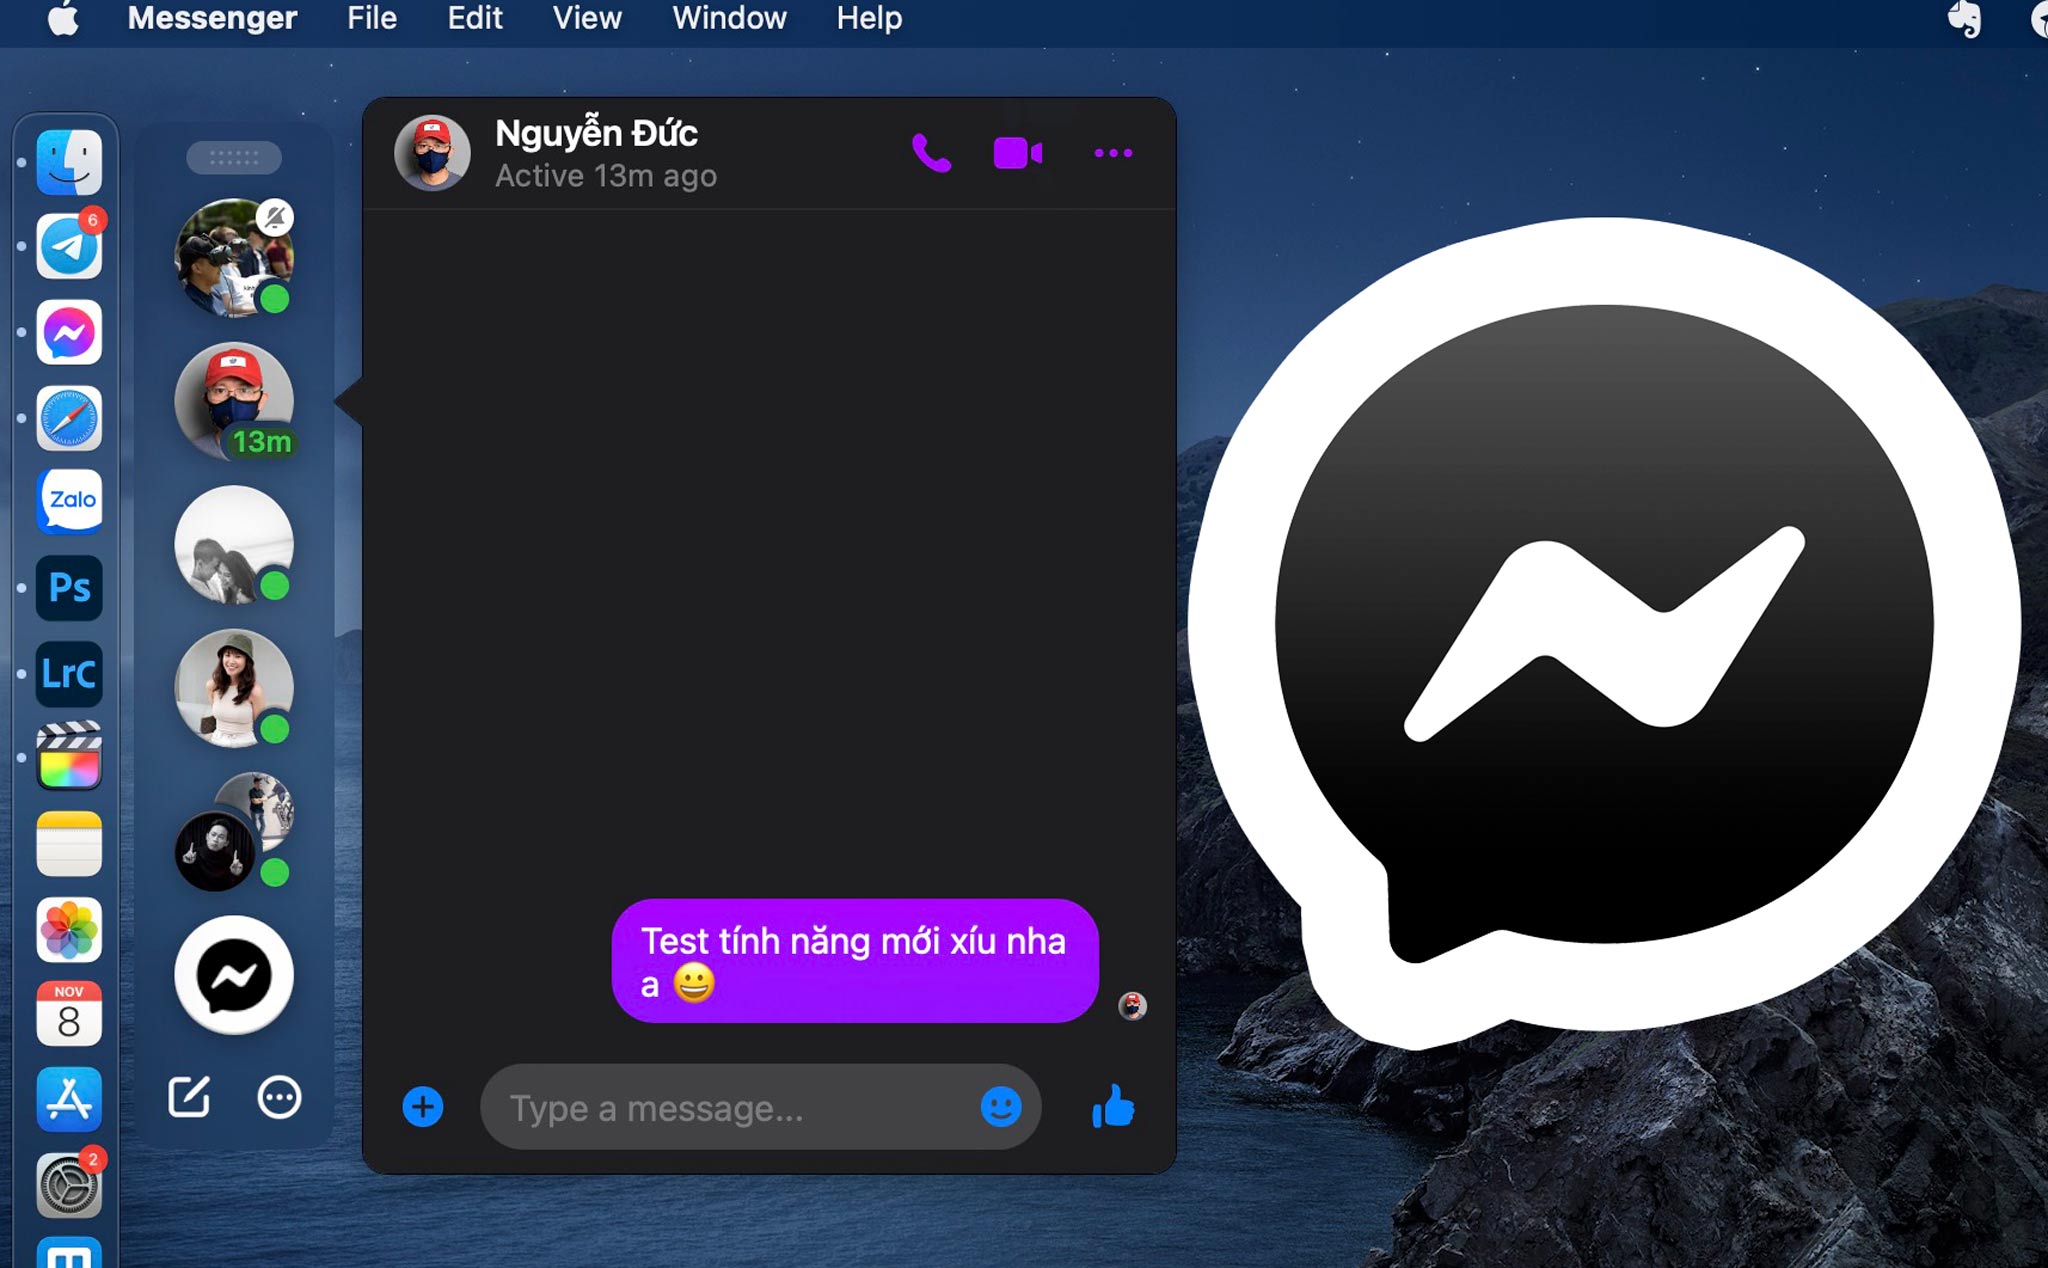 Thử tính năng Bubbles - bong bóng chat trên Messenger cho MacOS